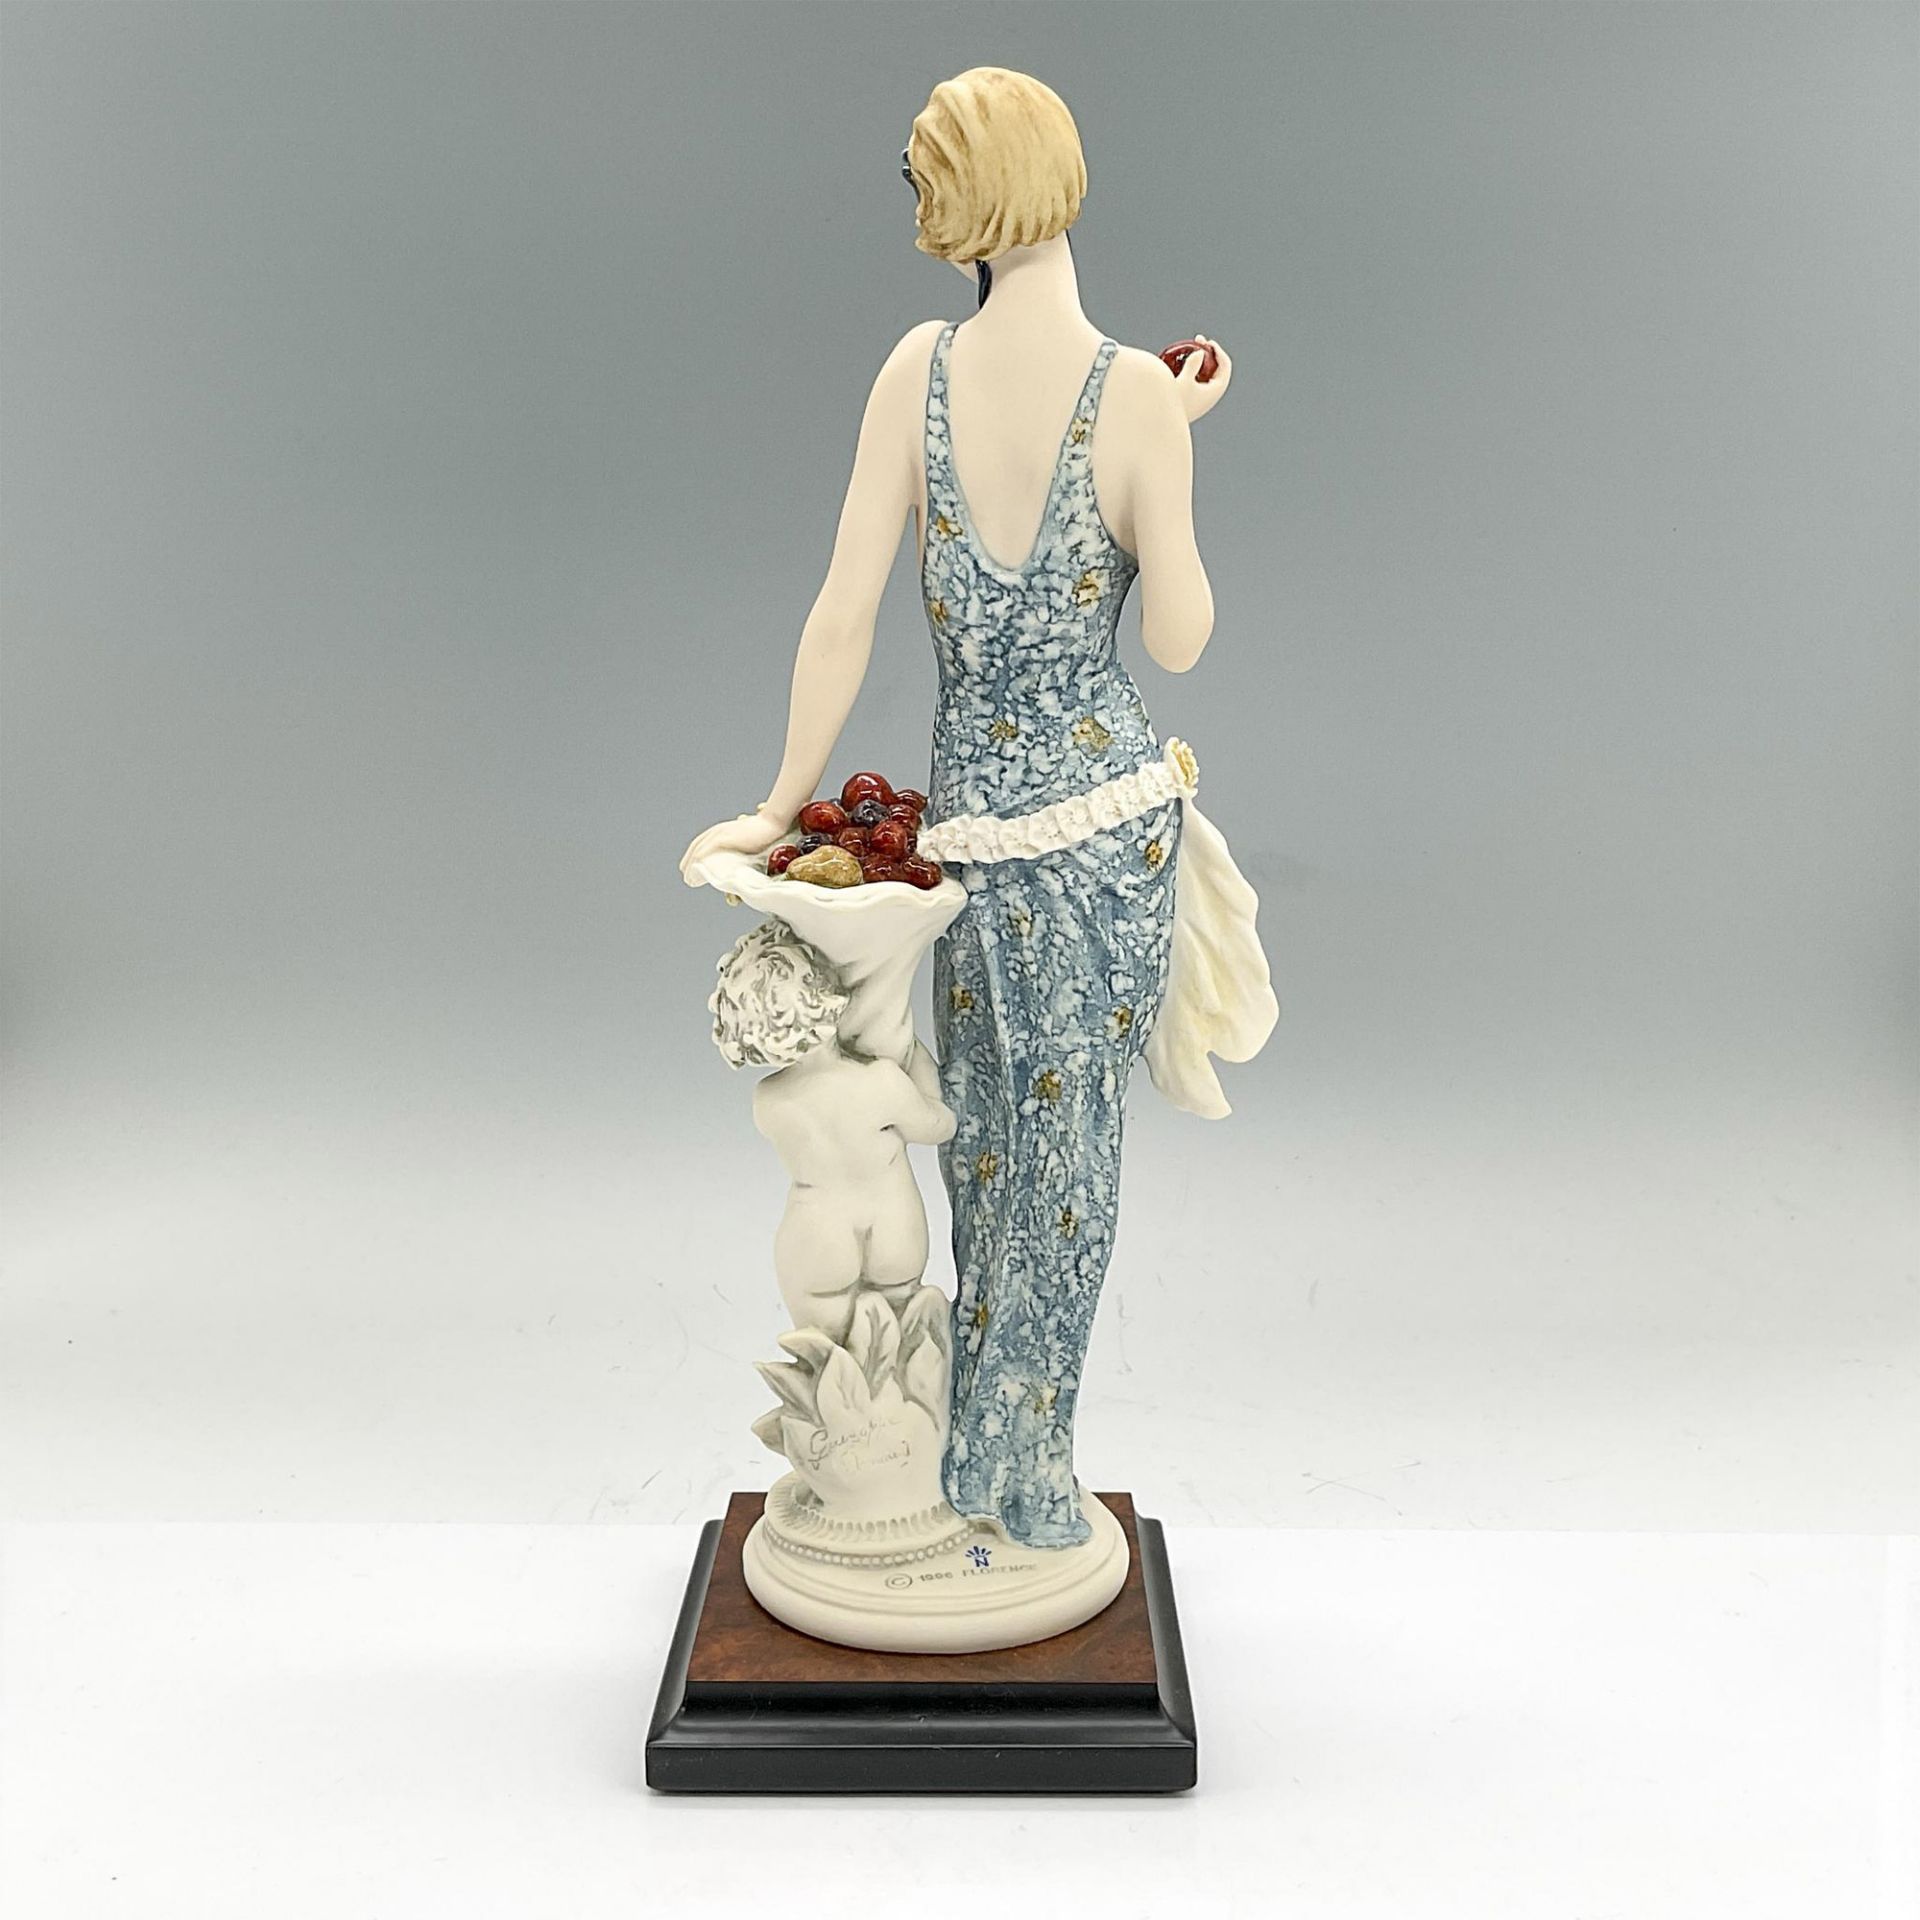 Florence Sculture d'Arte Giuseppe Armani Figurine, Indigo - Bild 2 aus 3